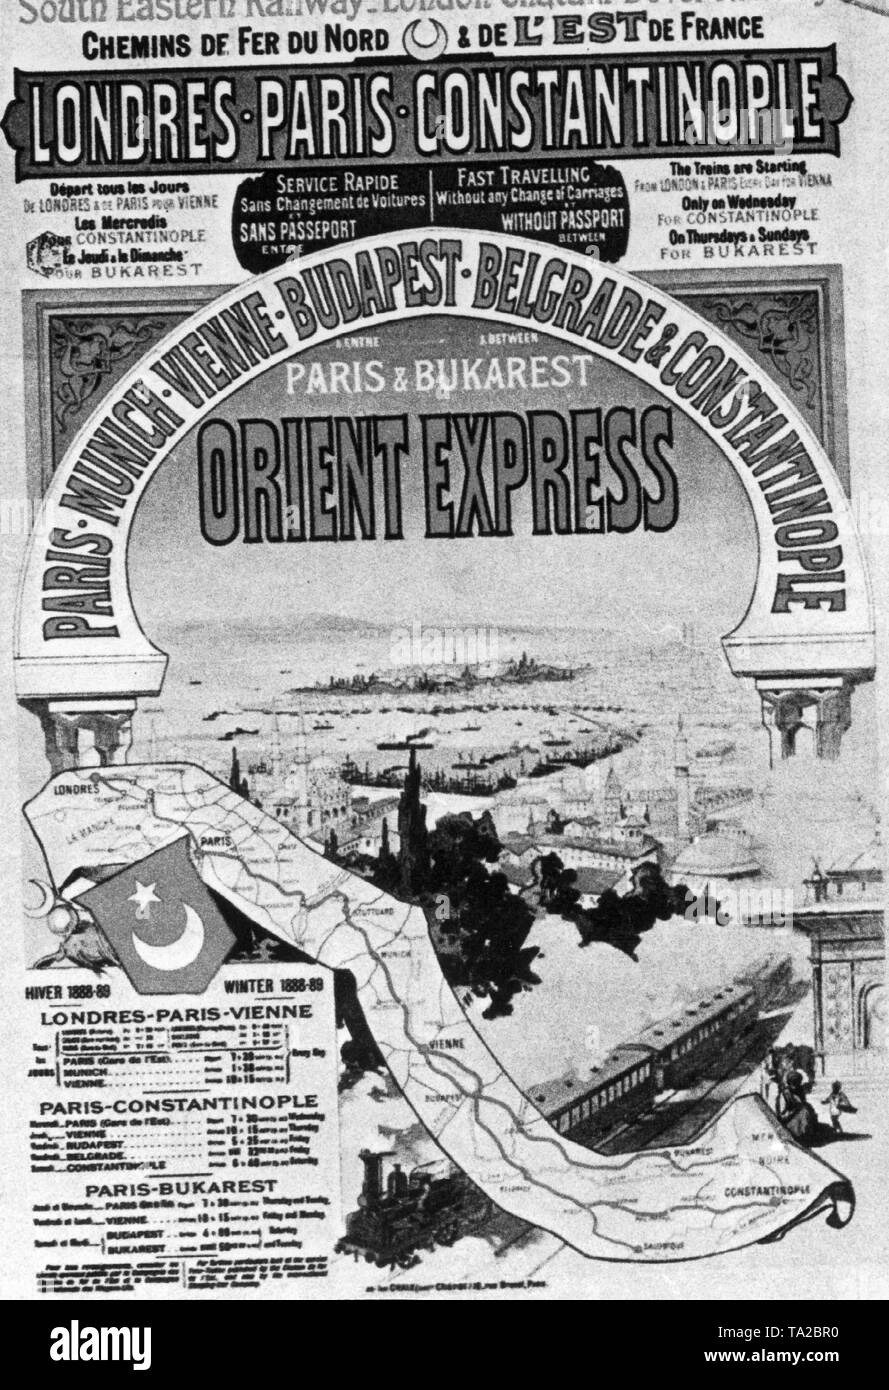 Une affiche publicitaire de la mythique Orient Express, qui s'est déroulé entre Paris et Constantinople de 1888. Banque D'Images